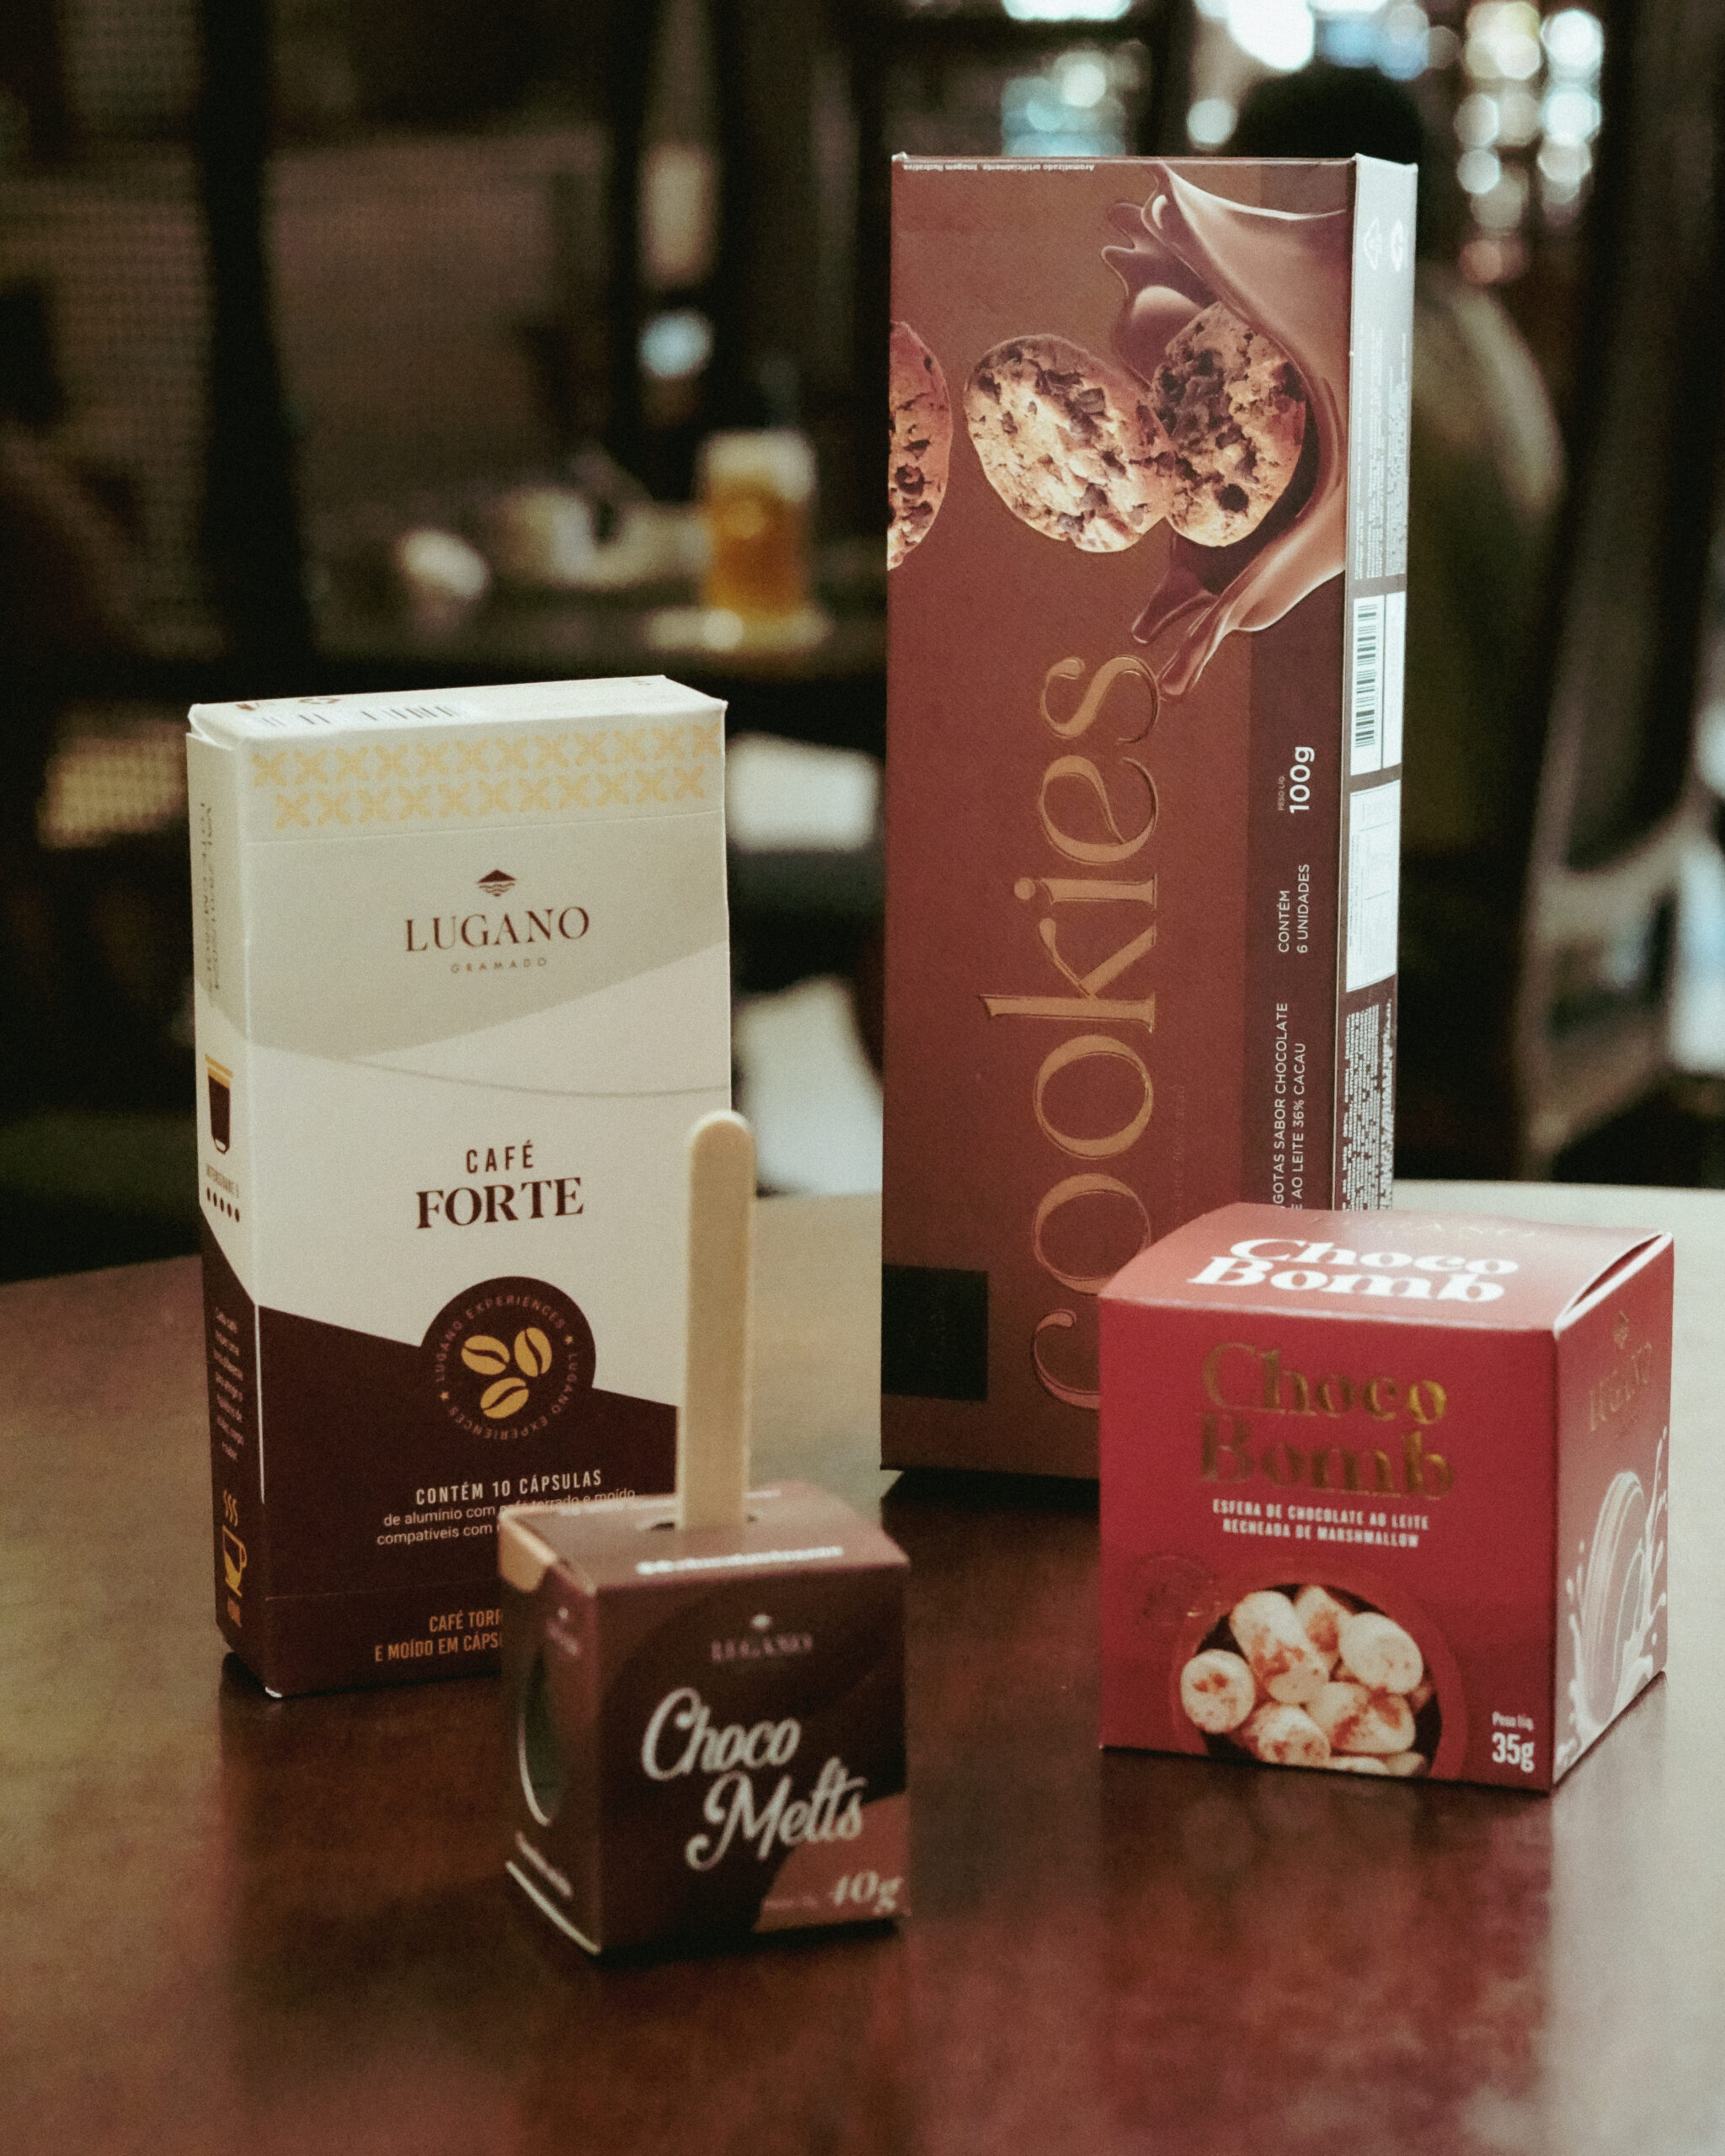 Descubra experiências novas com a Chocolate Lugano